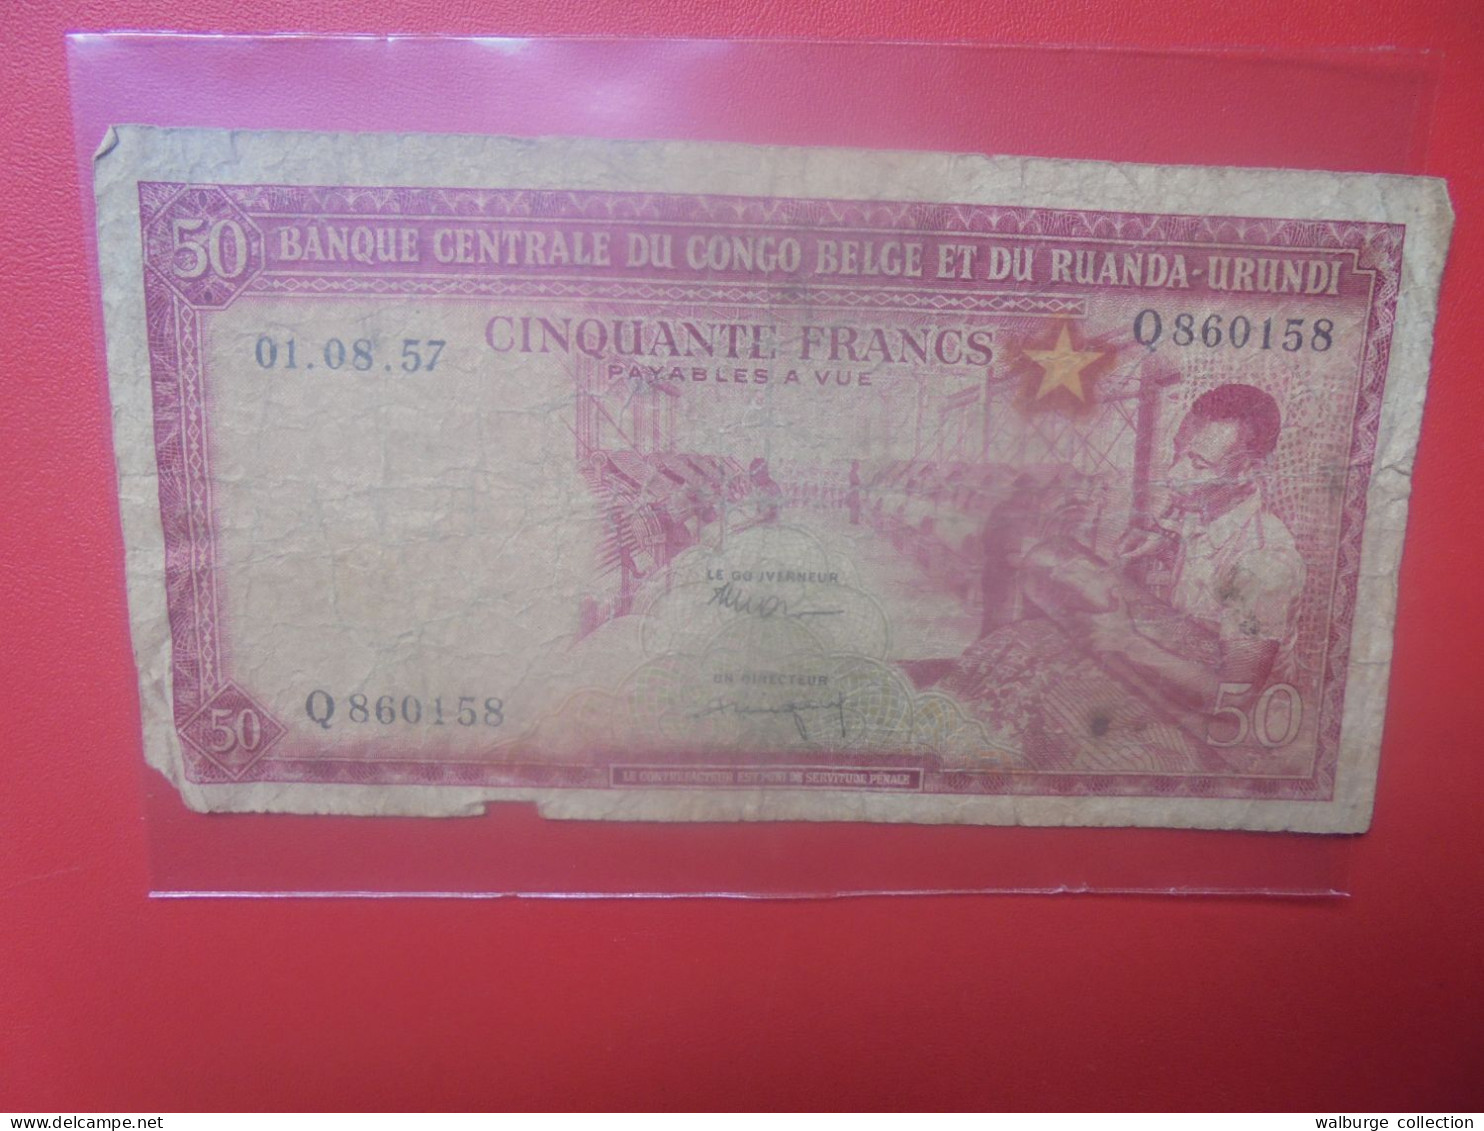 CONGO BELGE 50 FRANCS 1-8-57 Circuler (B.33) - Bank Van Belgisch Kongo